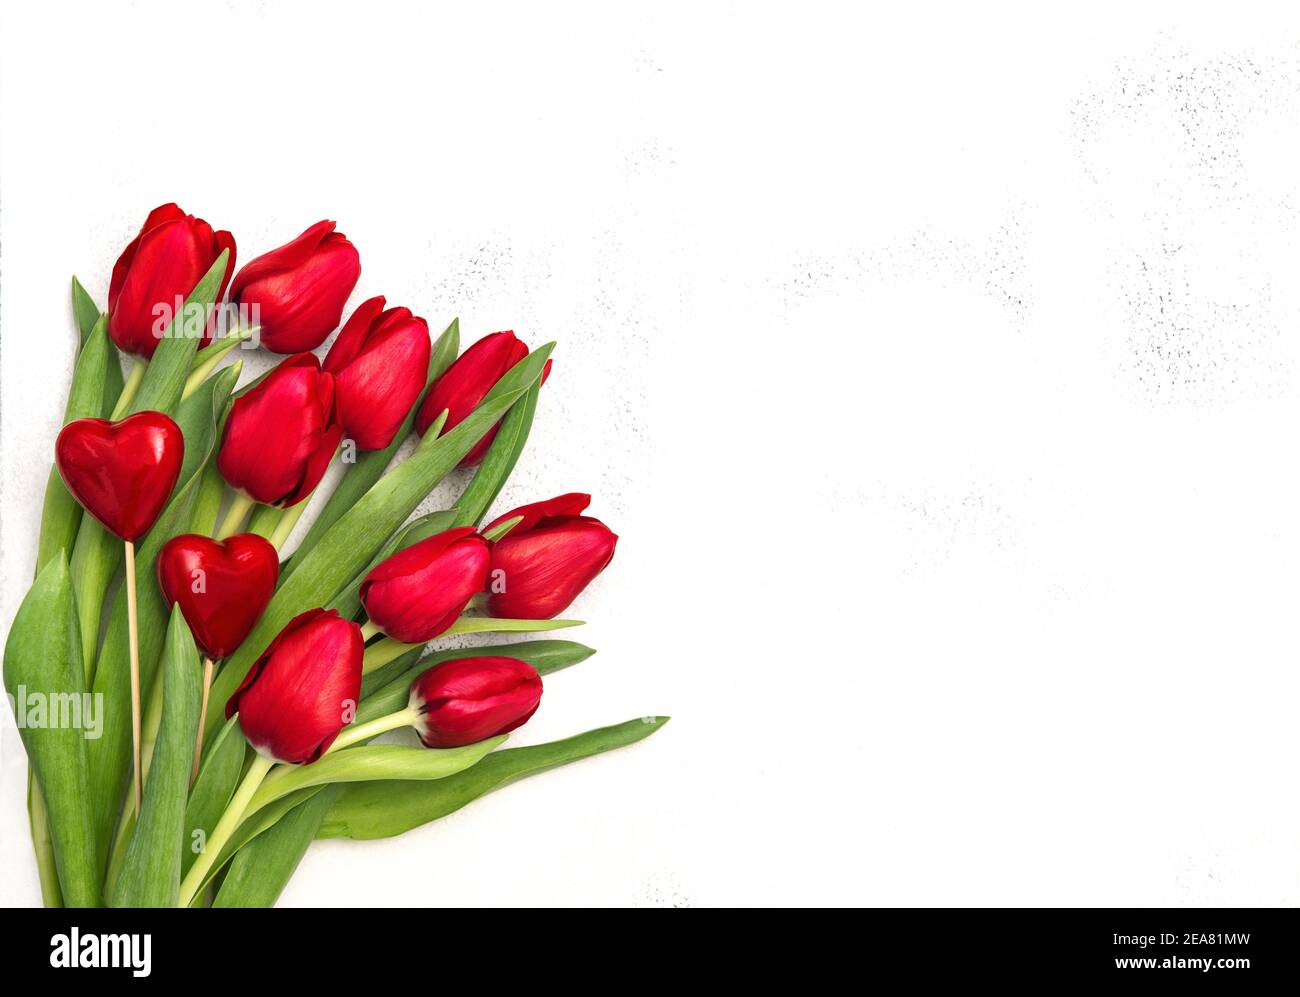 Coeurs rouges fleurs de tulipe sur fond clair. Décoration de Saint-Valentin Banque D'Images